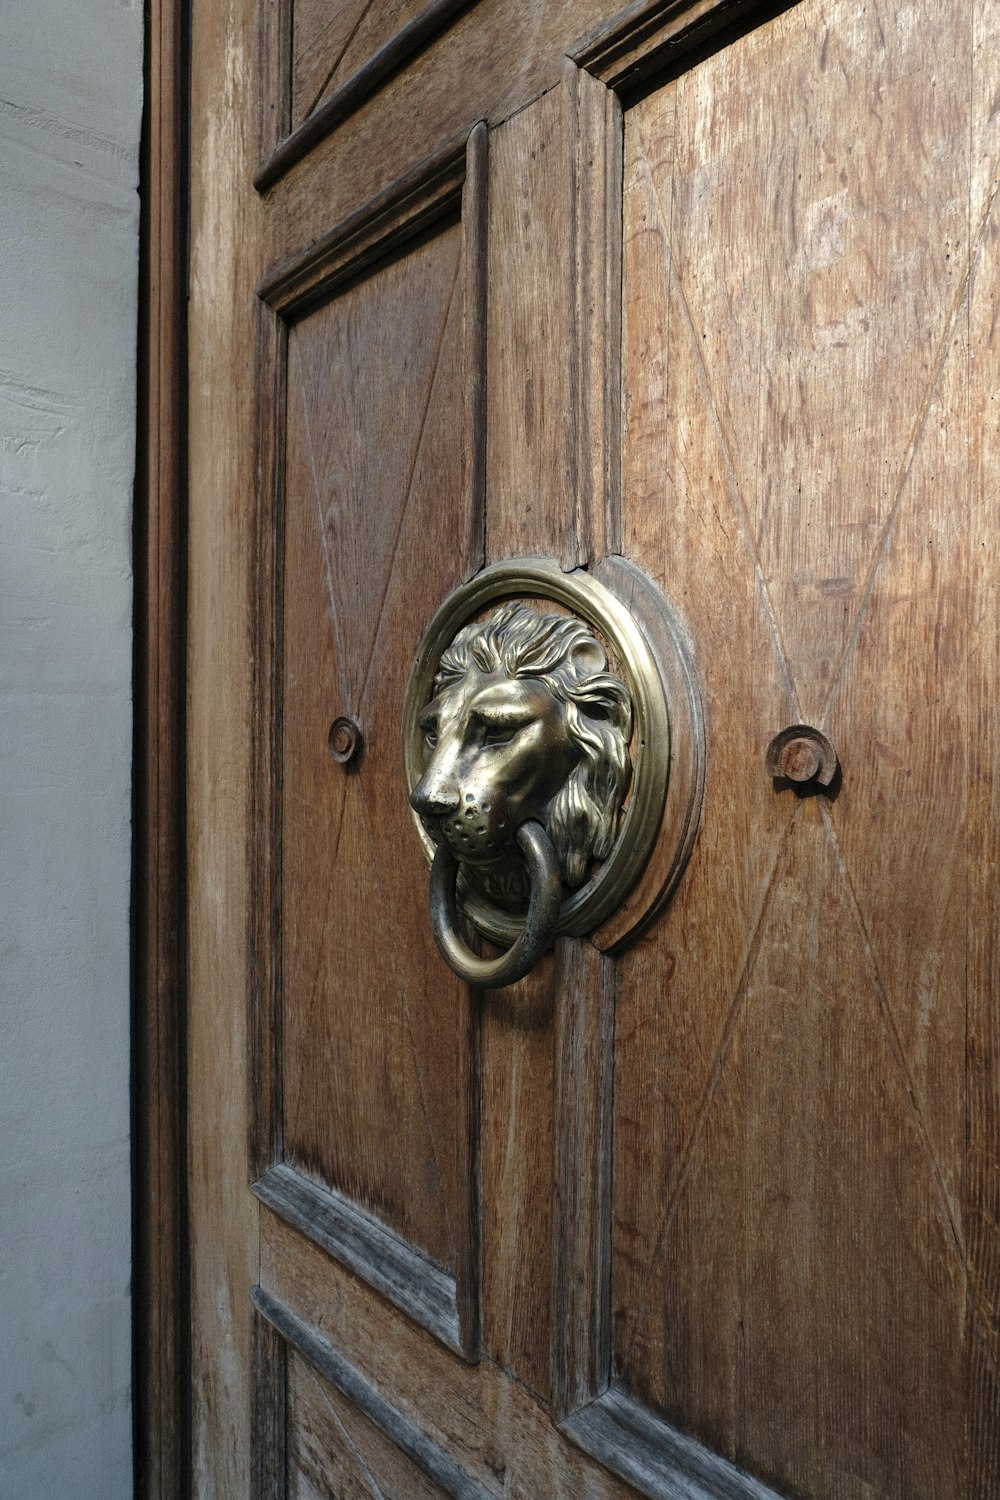 Un primo piano di una porta con una manopola a testa di leone